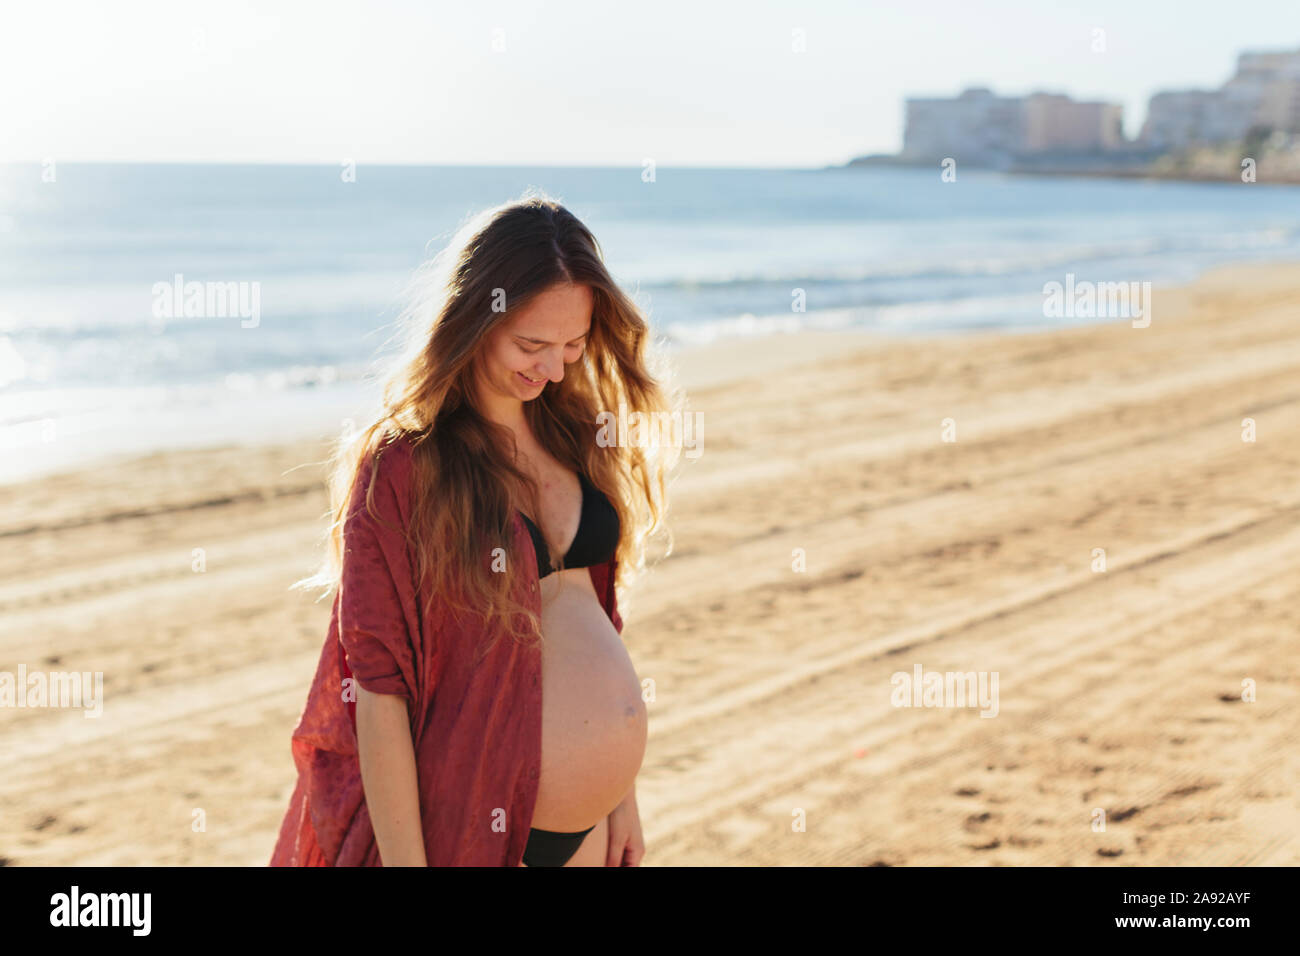 Pregnant woman on beach Stock Photo